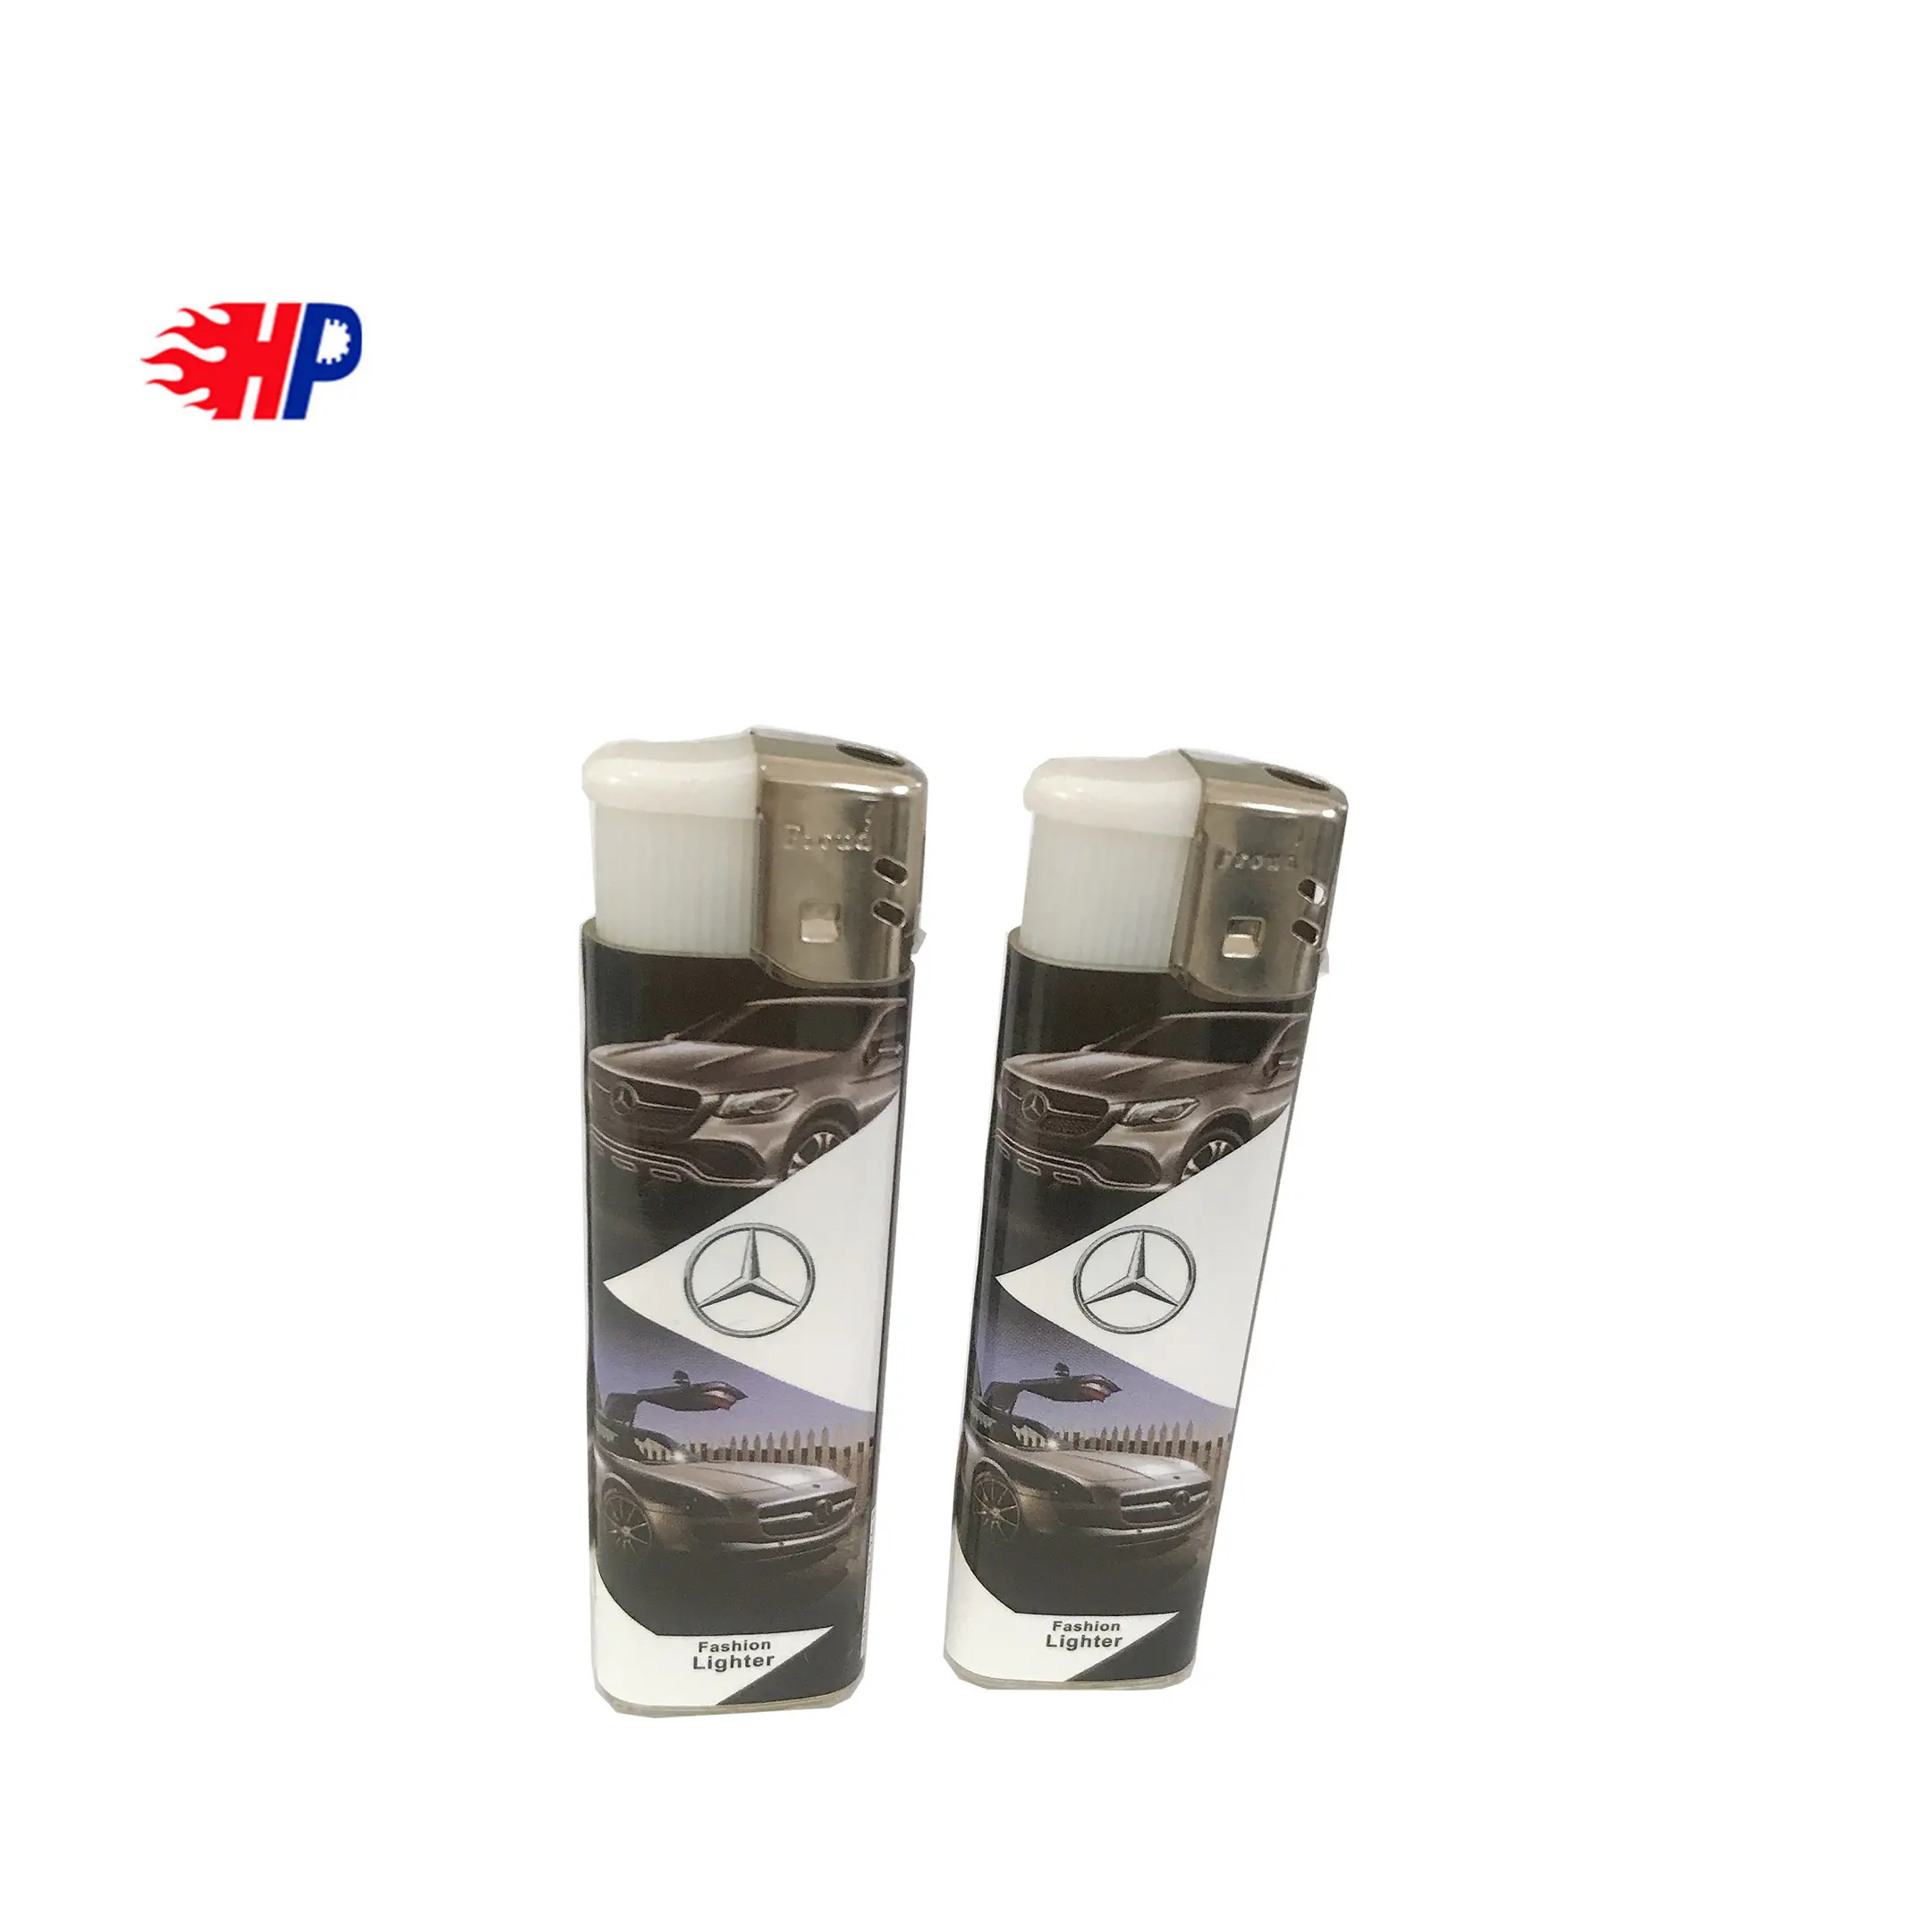 HAOPAI e cigarette disposable lighter, aansteker gas lighter, electronic cigarette lighter